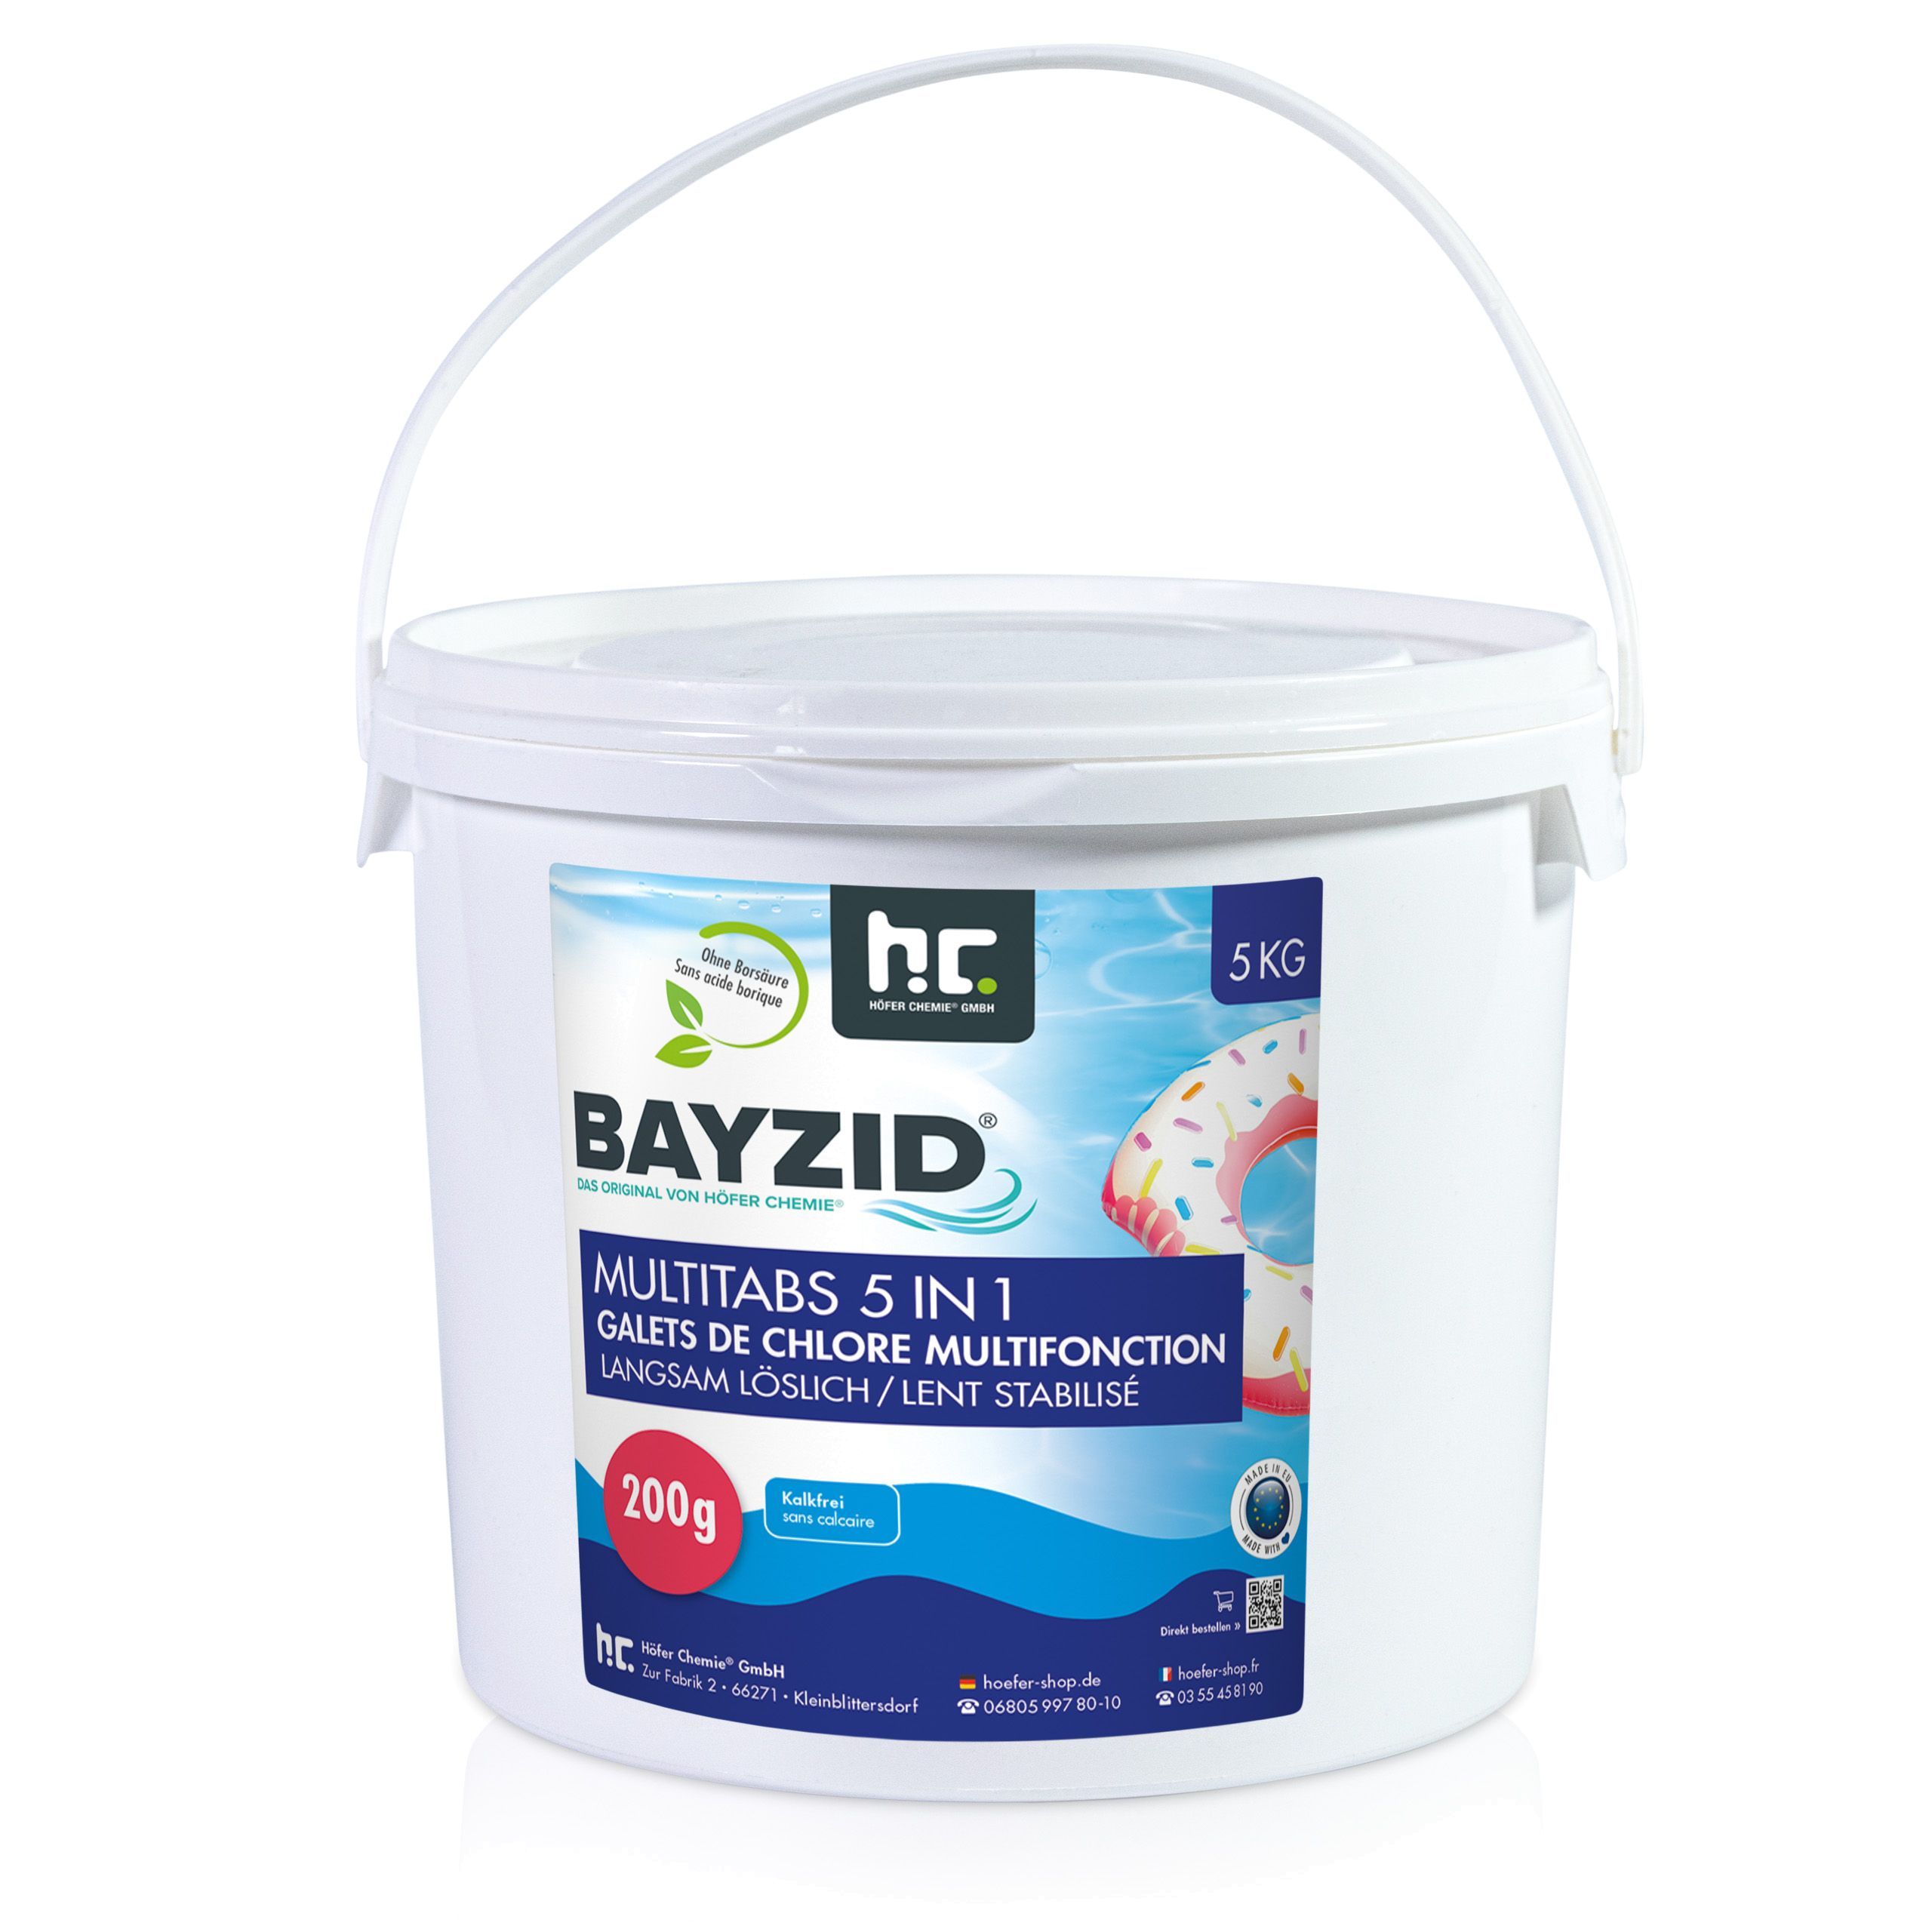 5 kg BAYZID® Galets chlore multifonction 200g 5en1